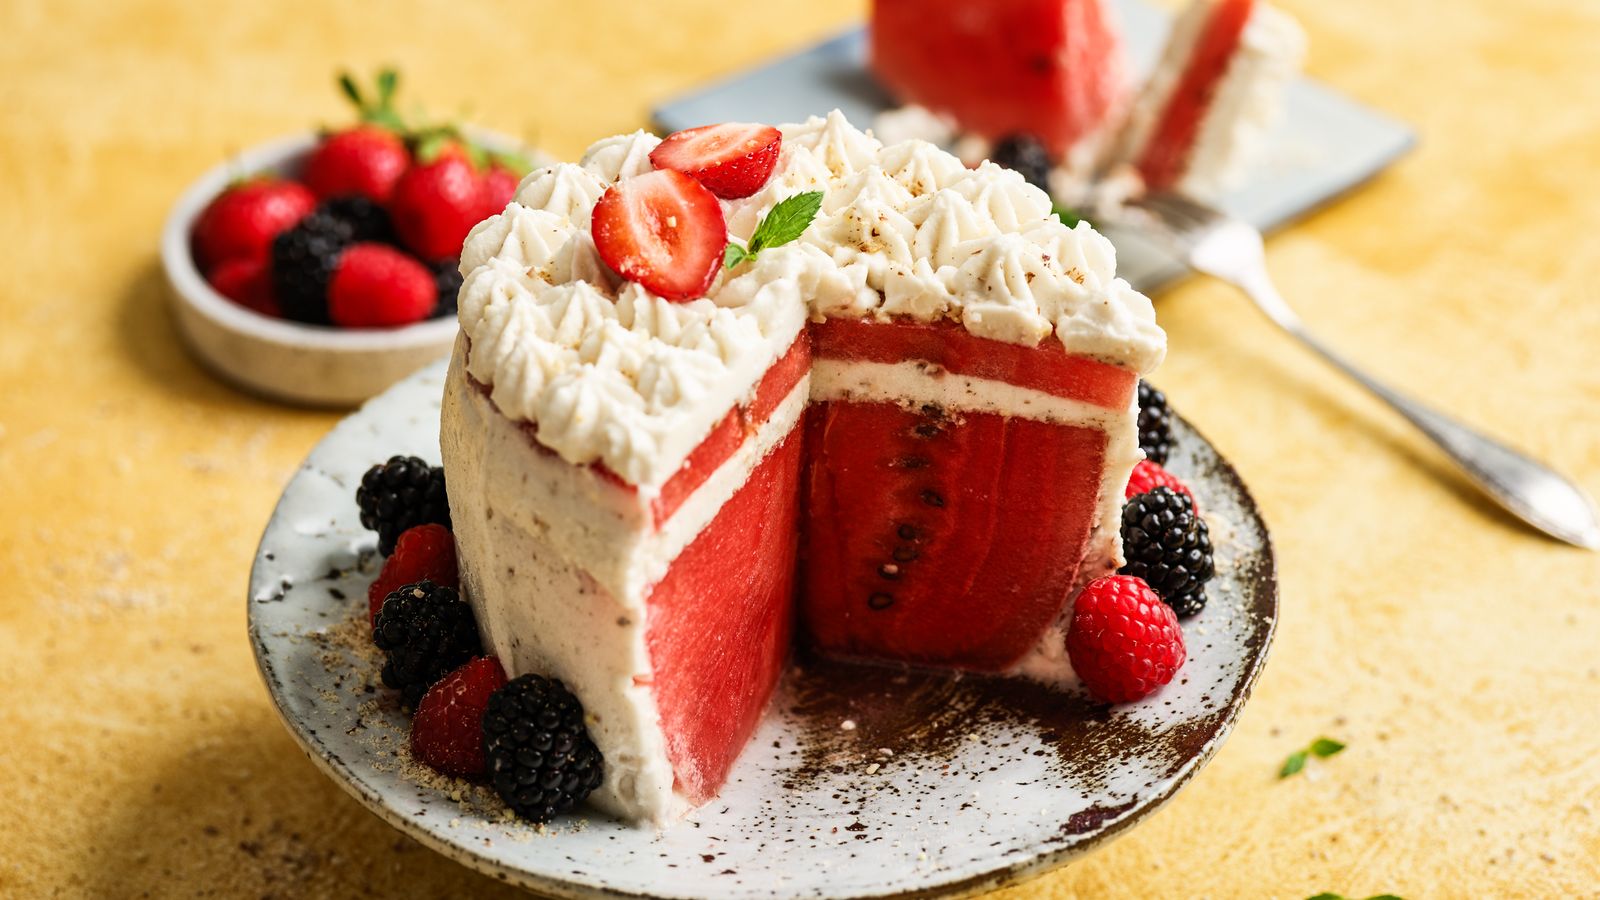 Torte aus Wassermelone